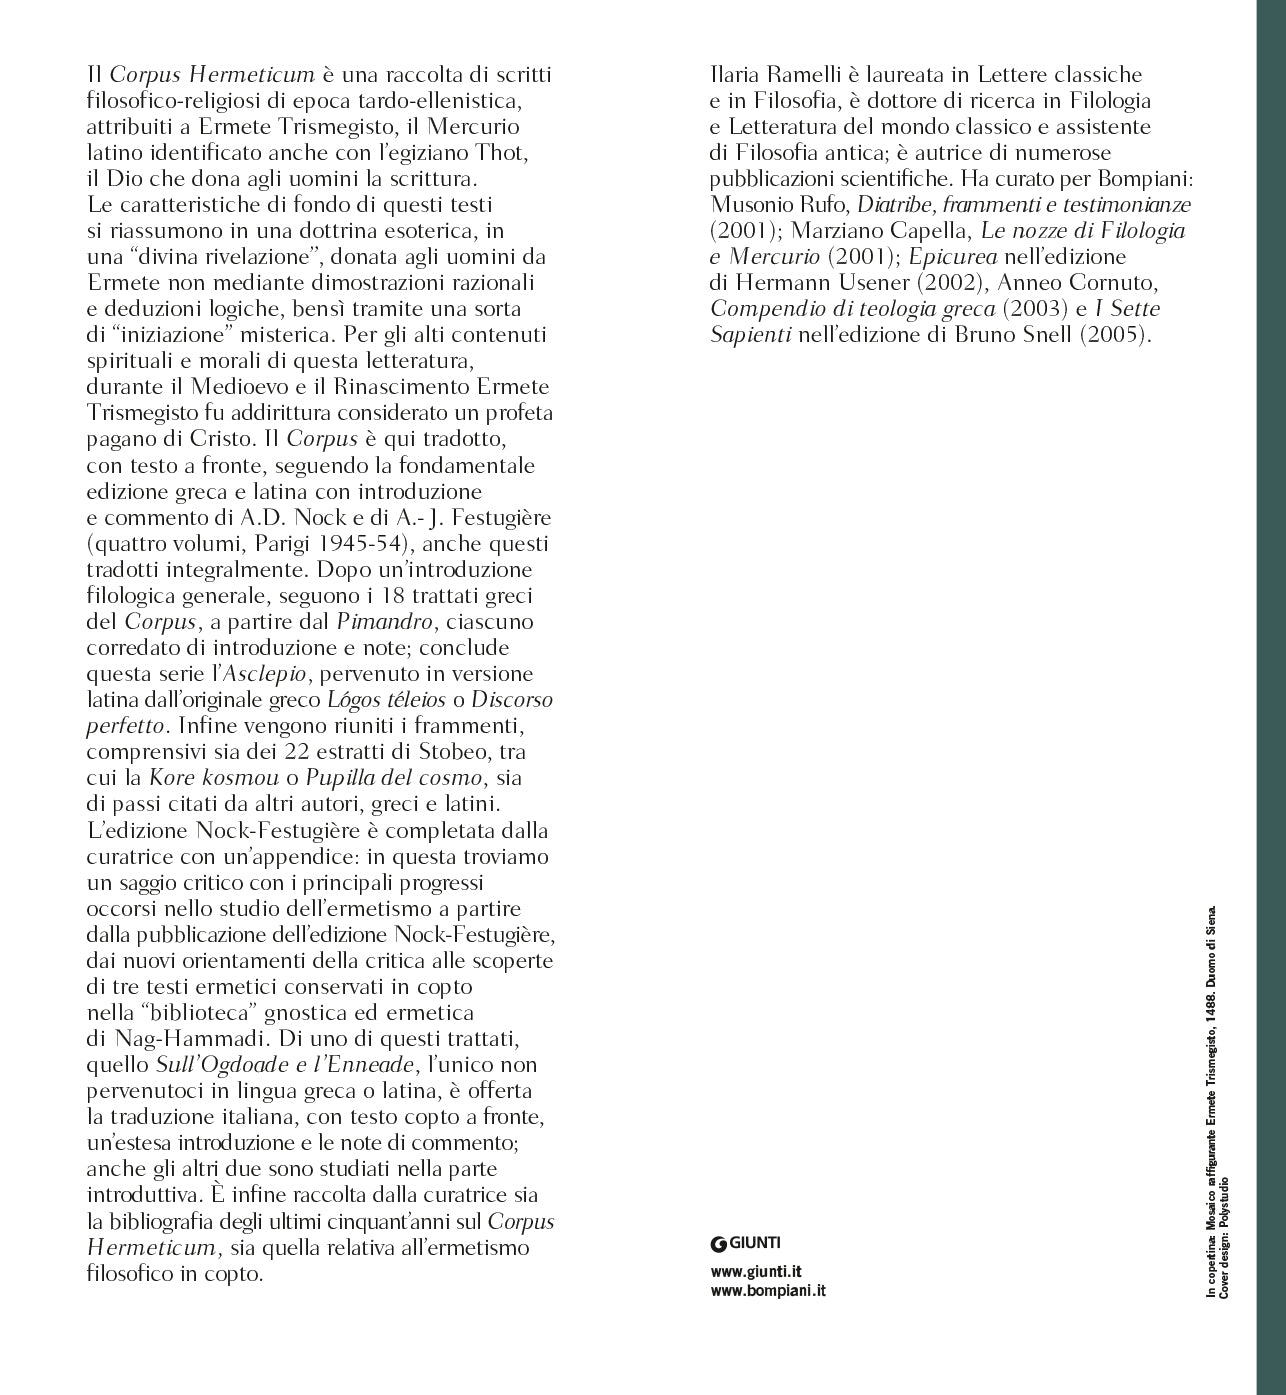 Corpus Hermeticum::Edizione e commento di A.D. Nock e A.-J. Festugière - Testo greco, latino e copto